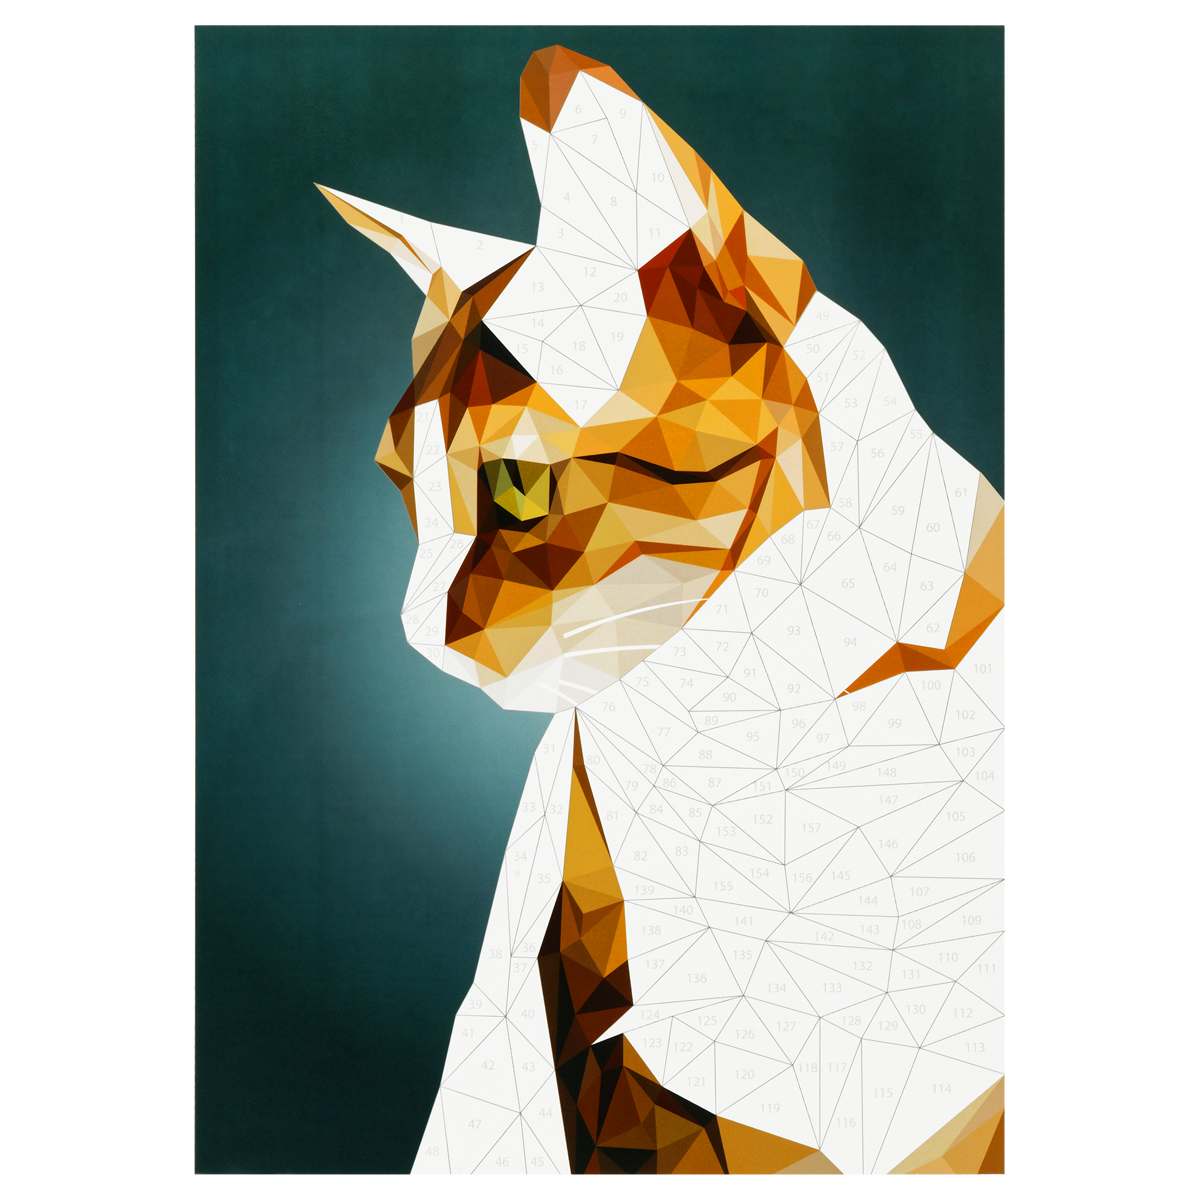 картинка Аппликация бумажная наклейками, А4, 2 основы, "Кошки", Три совы, АПн_51037 от магазина Альфанит в Кунгуре